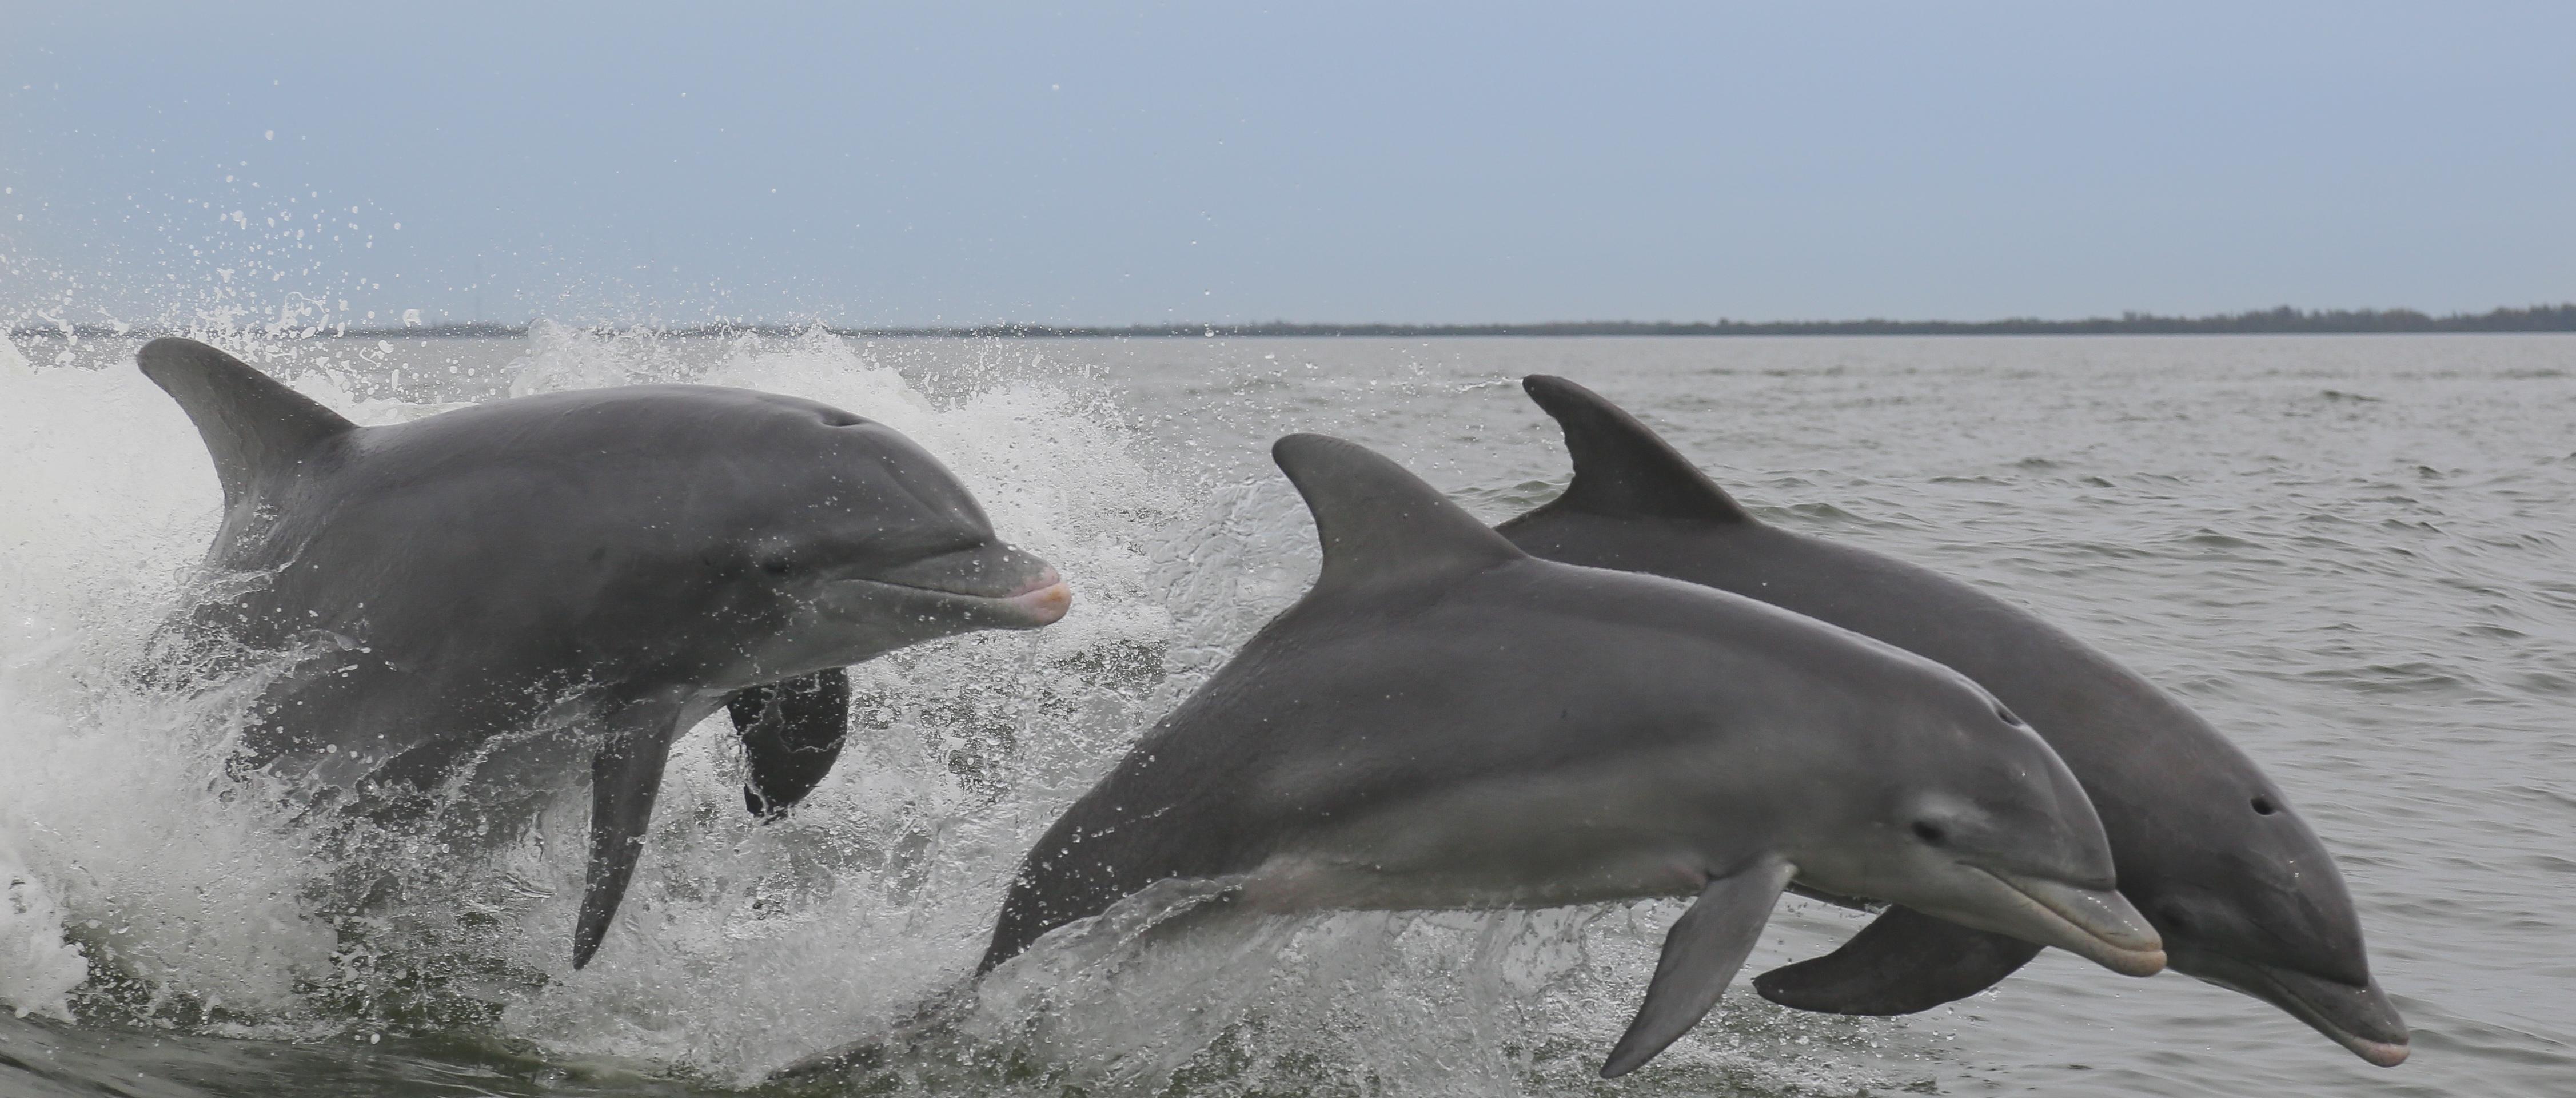 Croisière d’observation des dauphins à Clearwater Beach – Transport inclus depuis Orlando